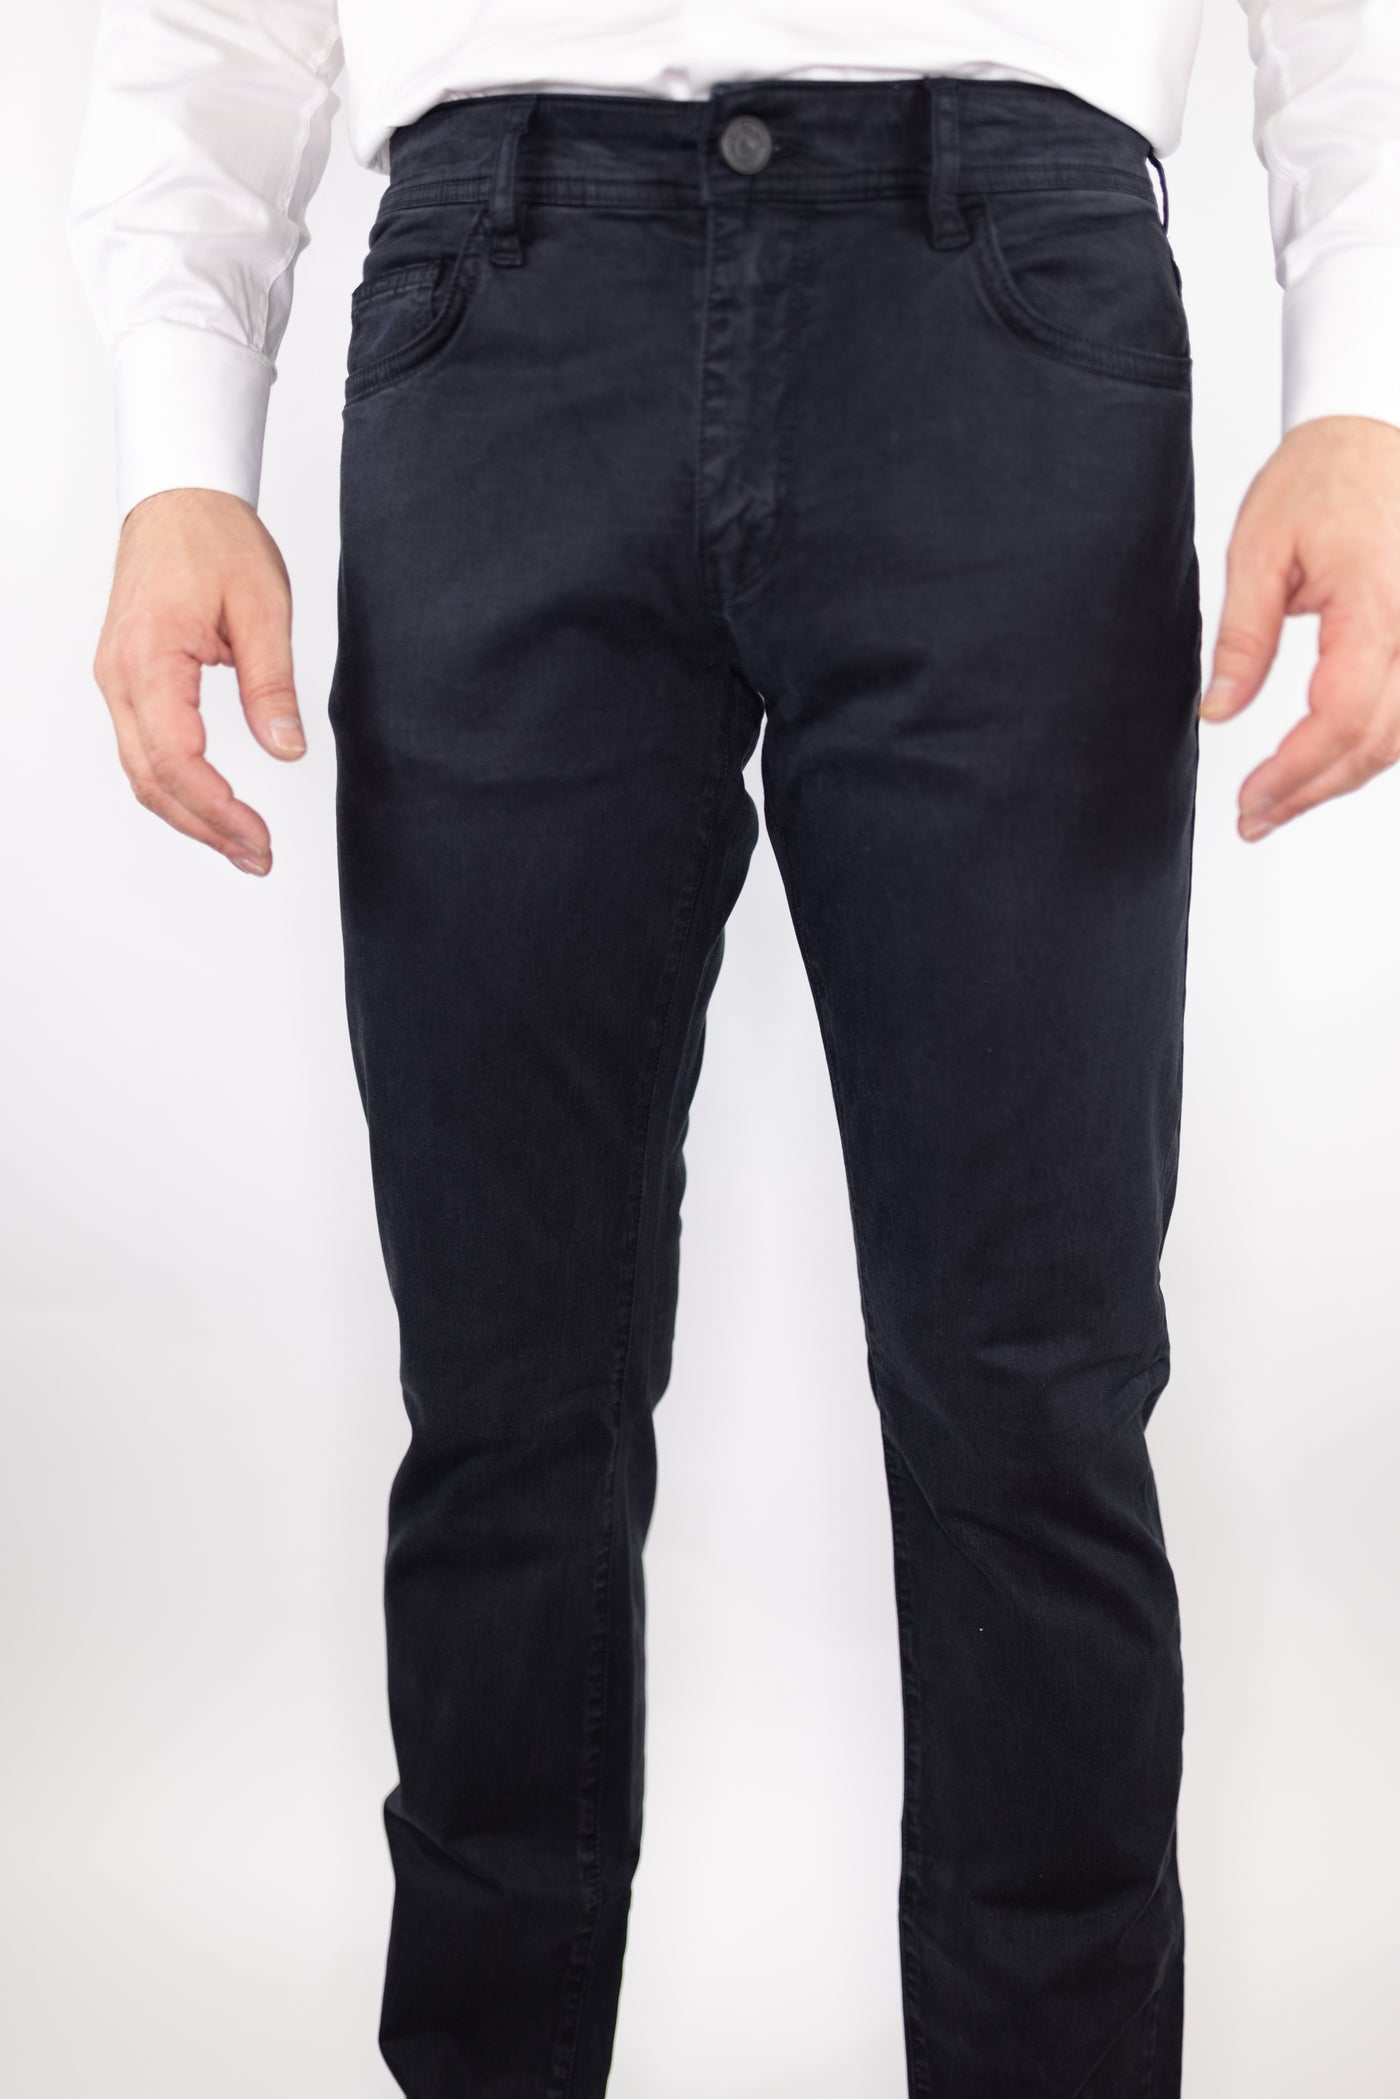 of Spades Jack Jeans – Ticknors Men's Clothiers